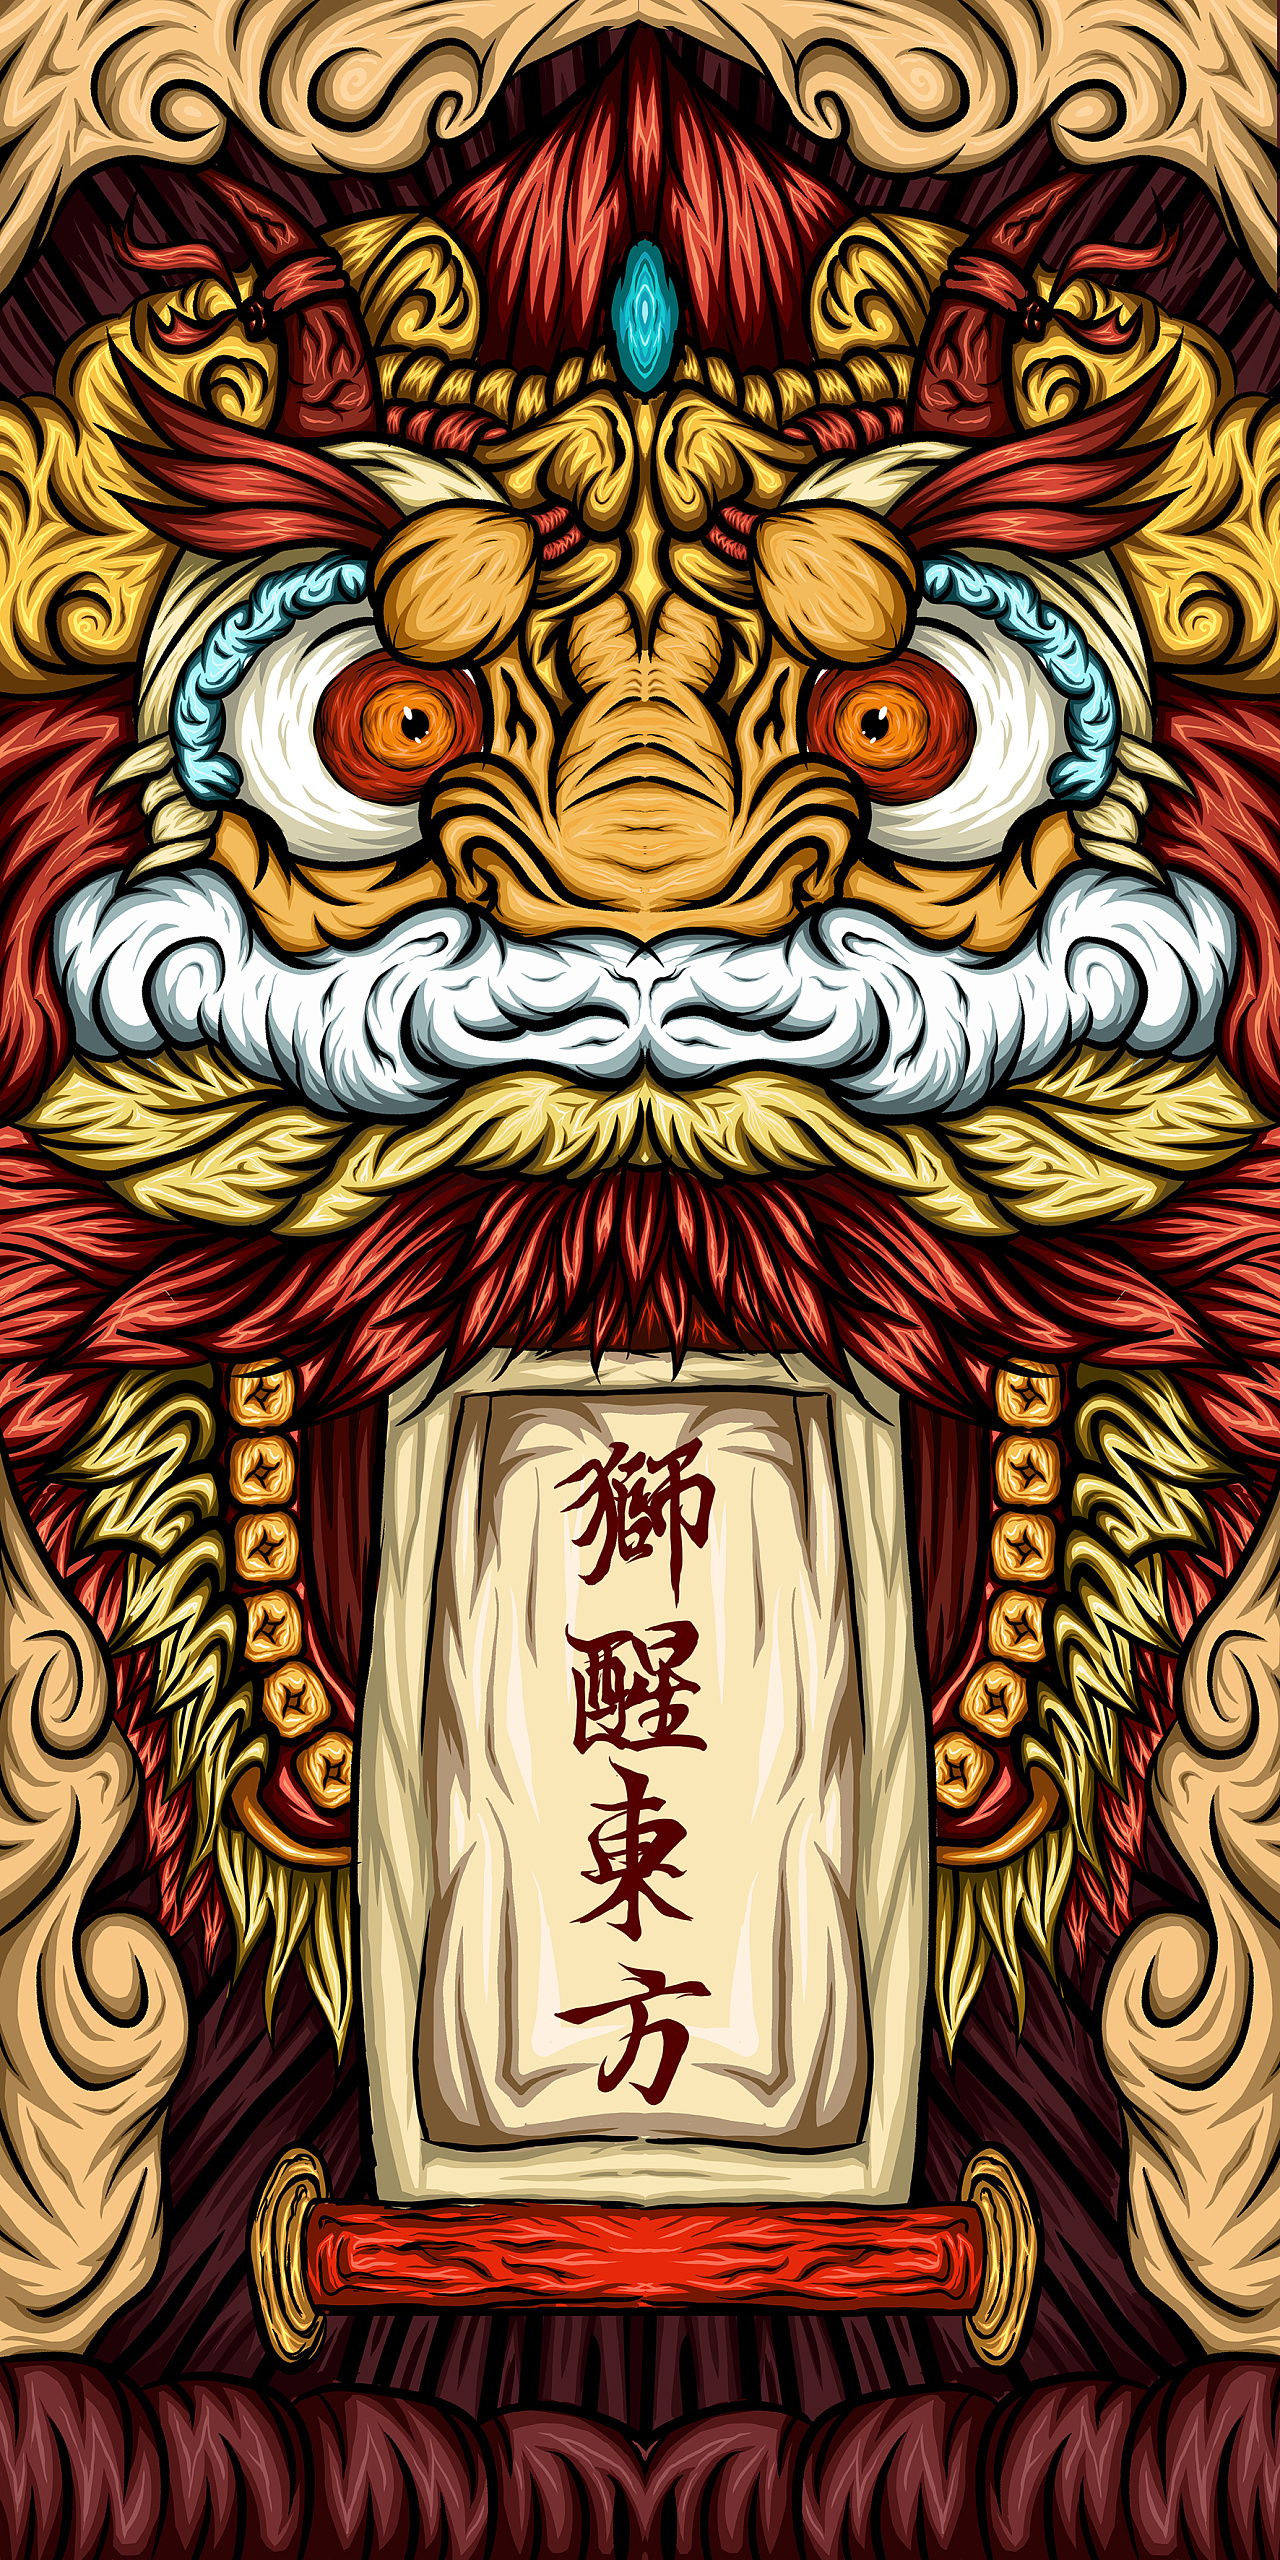 中国风醒狮手机壁纸图片